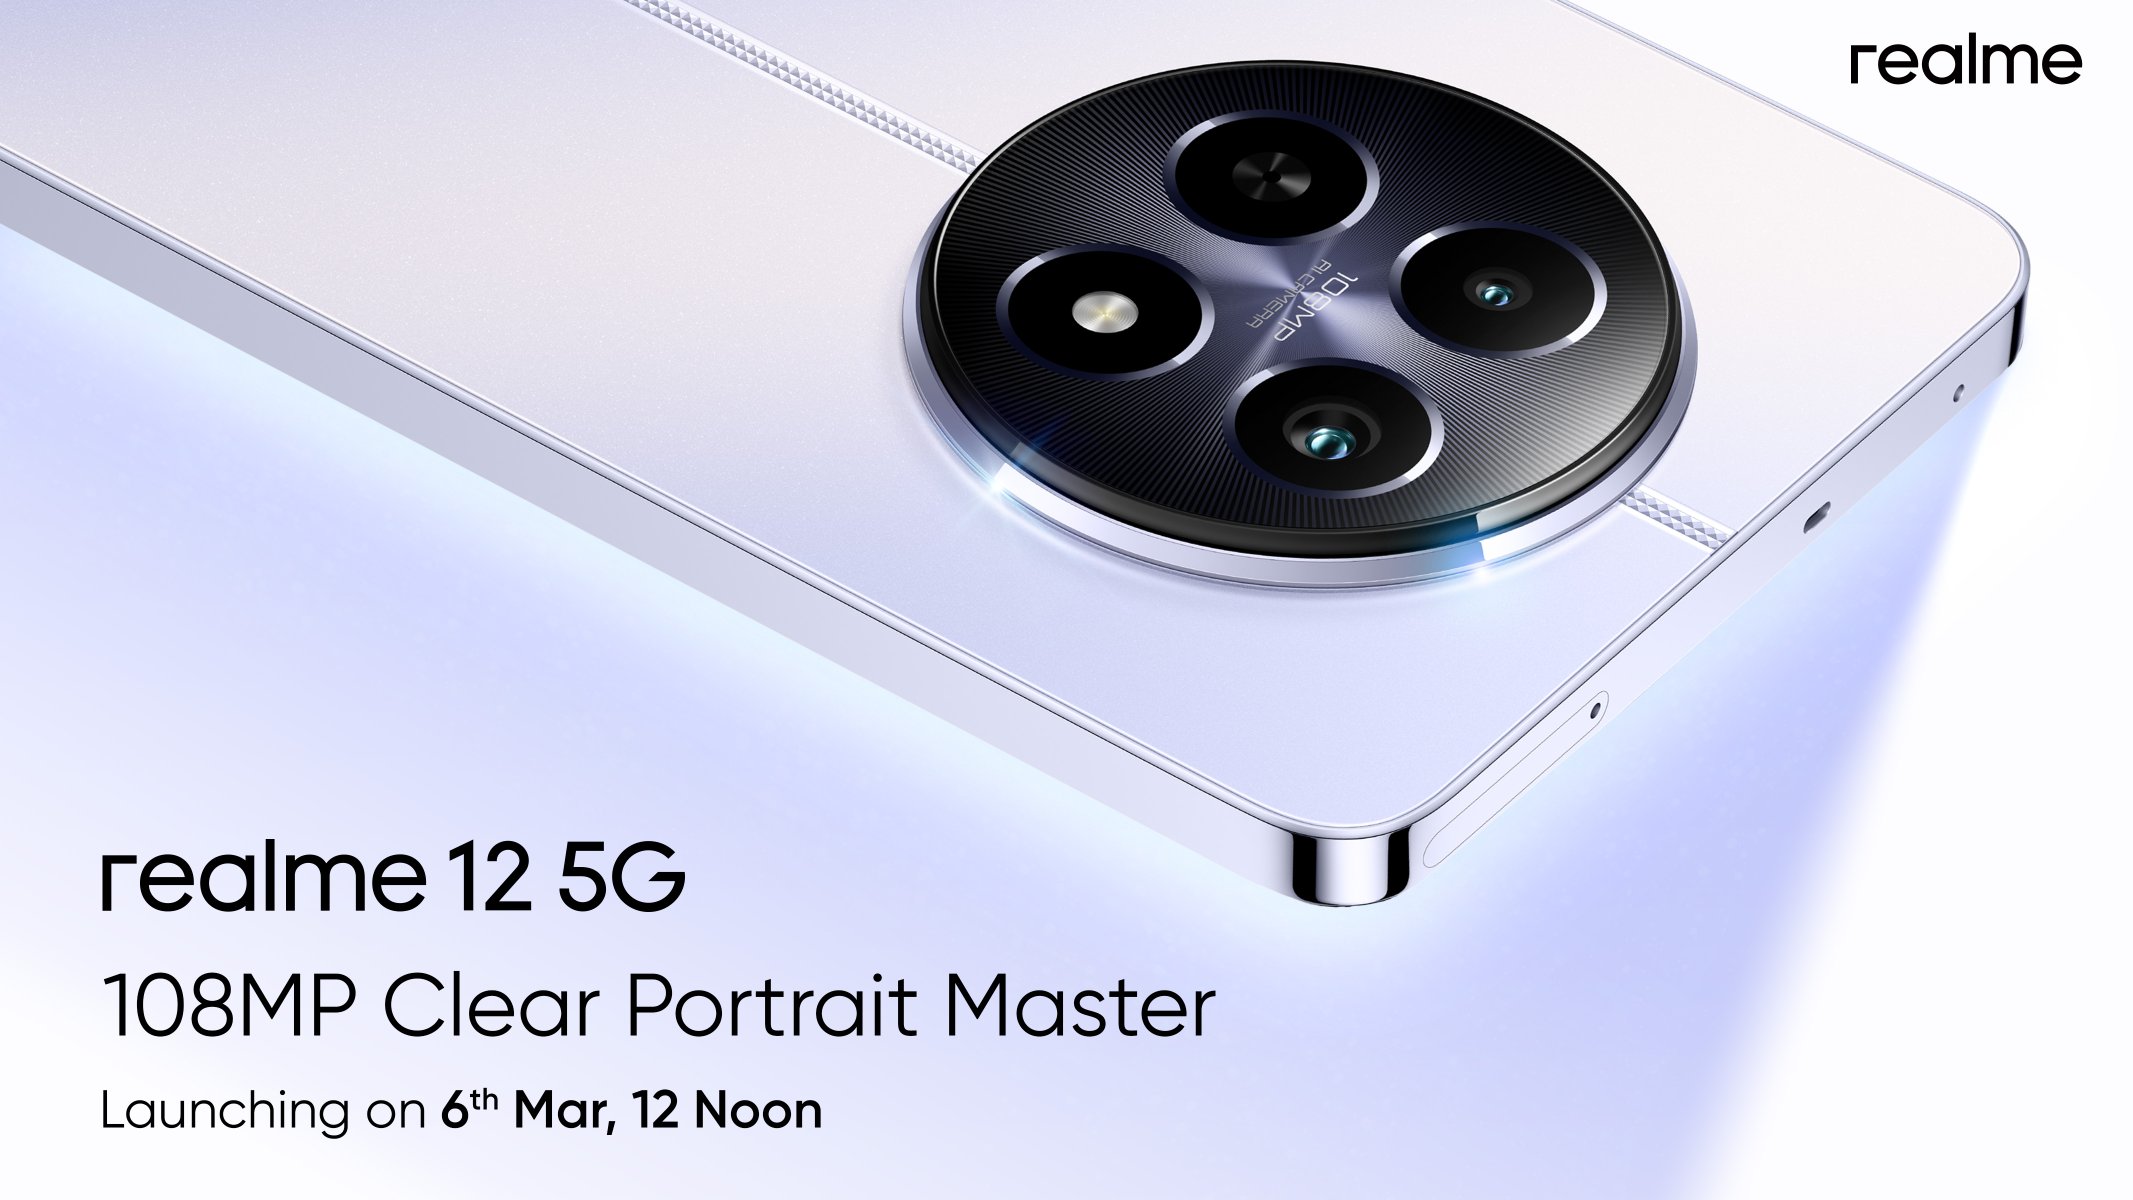 Det er officielt: Realme 12 med et 108 MP kamera får premiere den 6. marts.